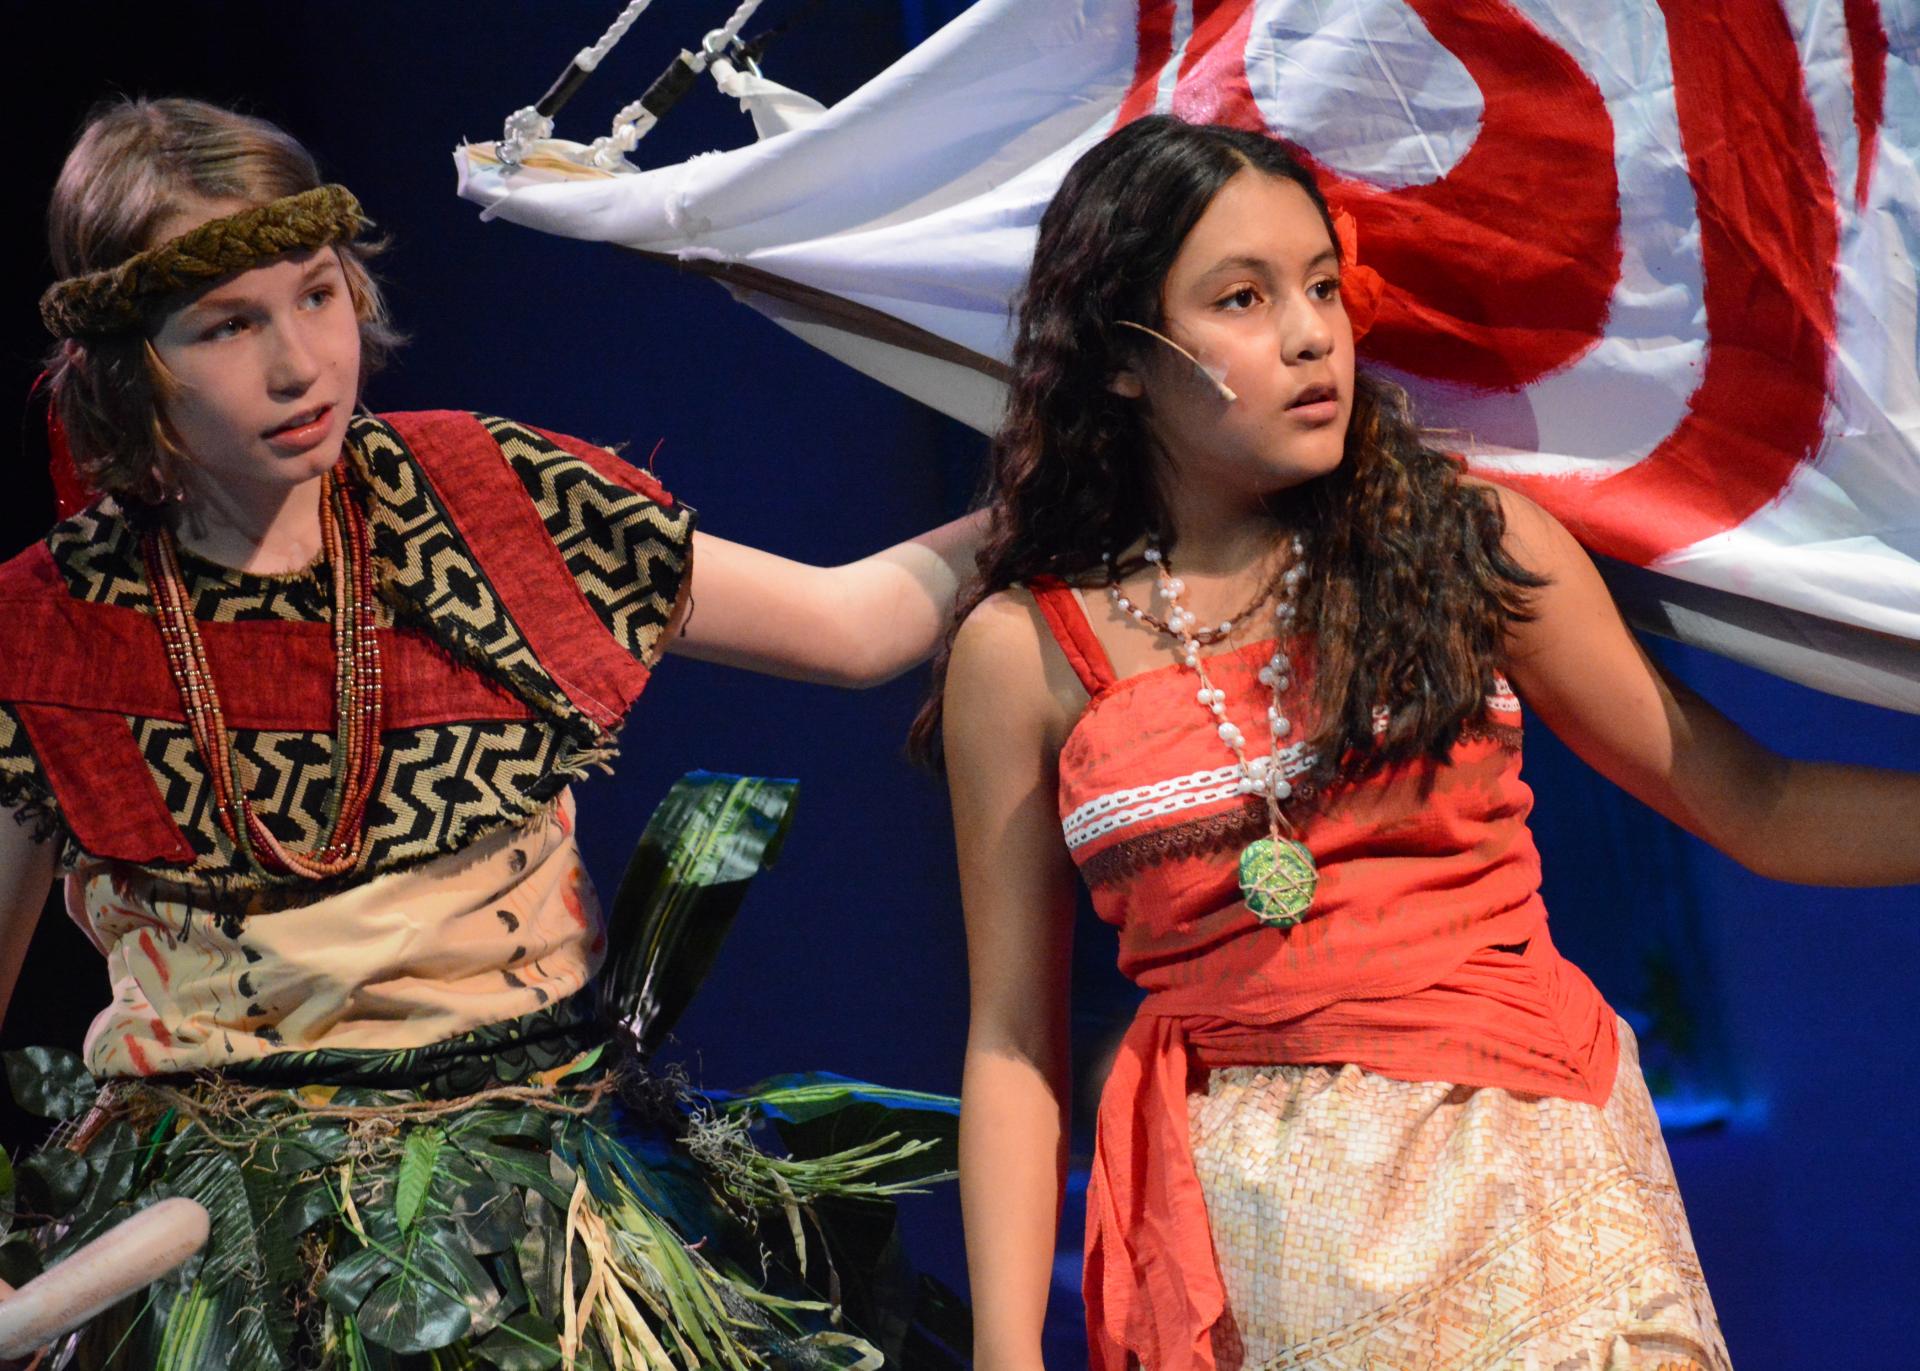 SummerPrep Theater: Moana and Maui in Disney's Moana JR